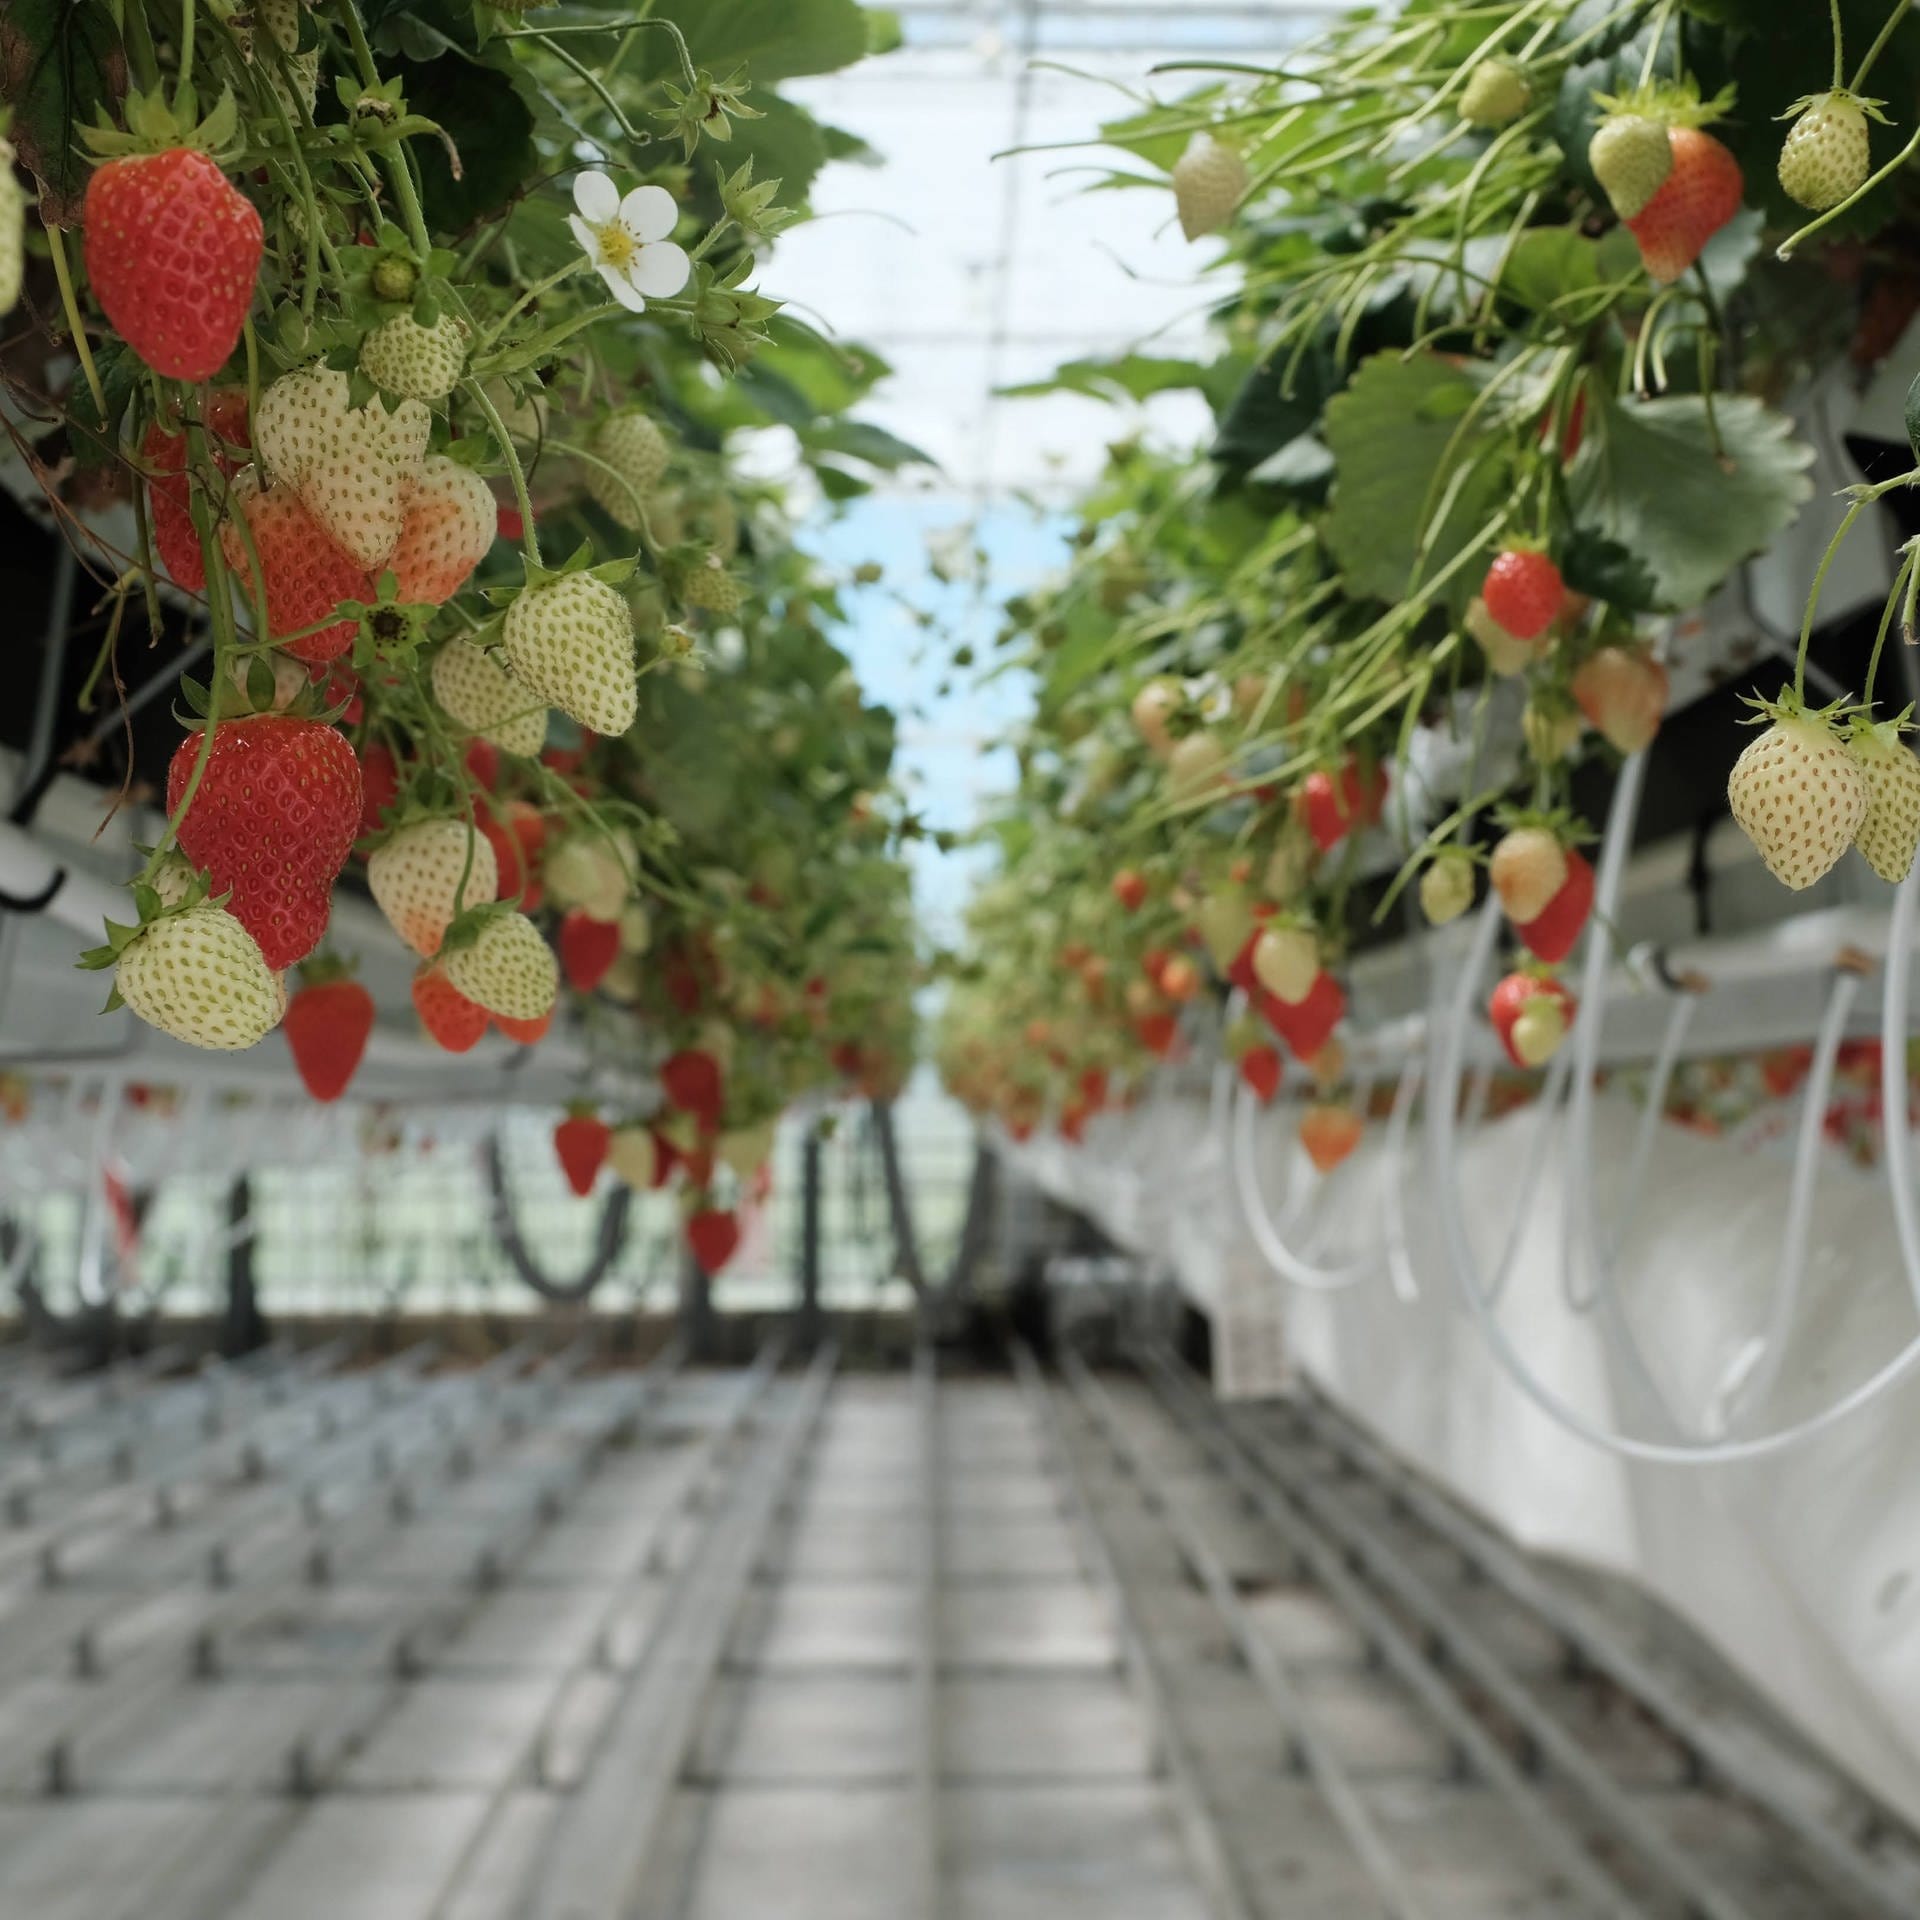 Gemüse aus dem Hightech-Gewächshaus – Wie Holland die Agrarwirtschaft optimiert